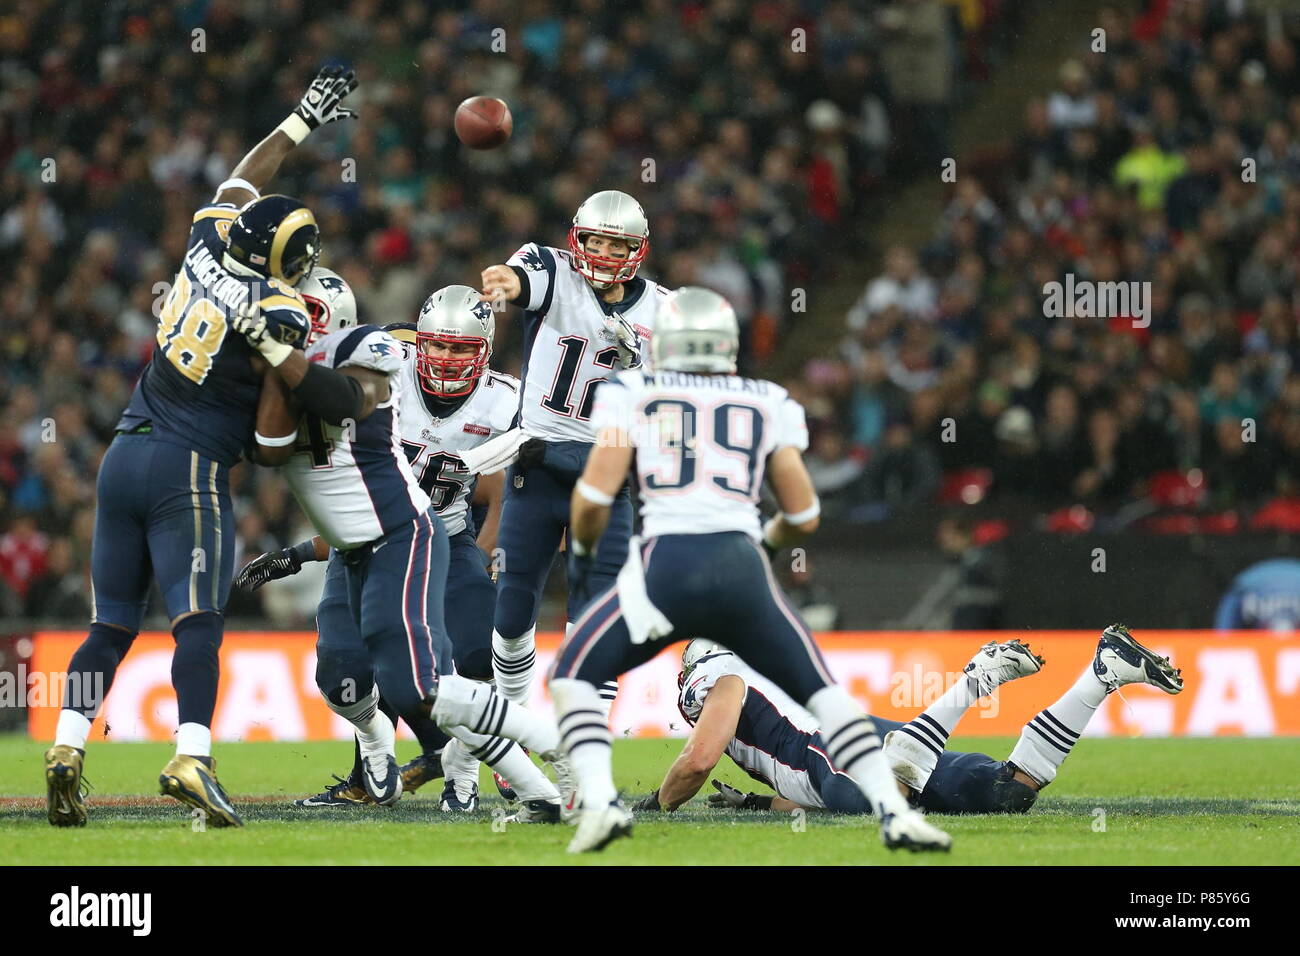 New England Patriots Quarterback Tom Brady sieht für den Pass im vierten Quartal gegen die St. Louis Rams während der NFL International Series Spiel 2012 im Wembley Stadion 28. Oktober. Tom Brady ist die erfolgreichste Quarterback in der NFL Geschichte mit 6 Superbowl Sieger Ringe - - - Foto von Paul Cunningham Stockfoto